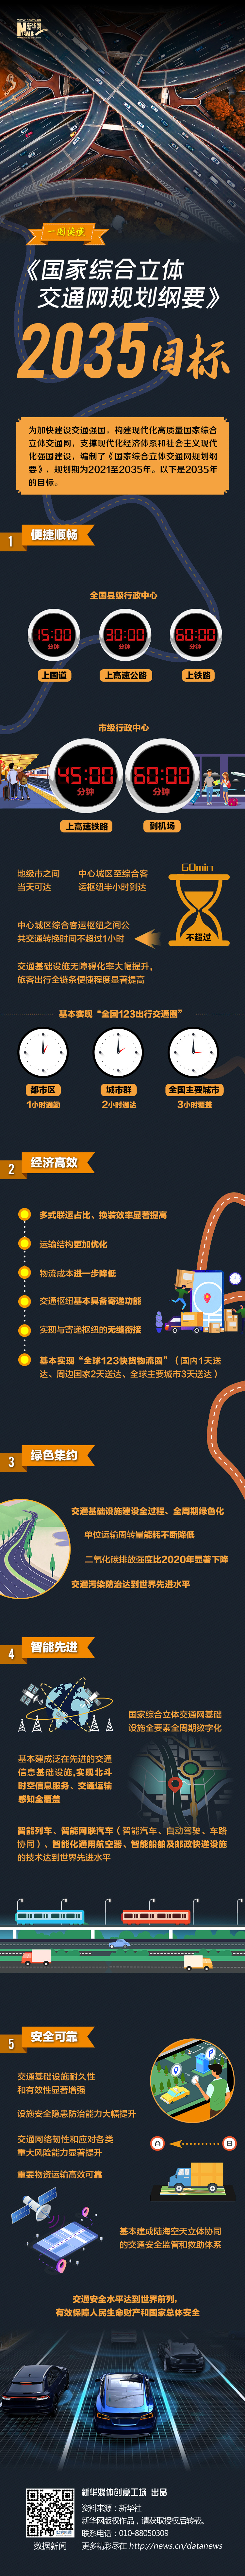 一图读懂中国《综合立体交通网规划纲要 - 2035目标》